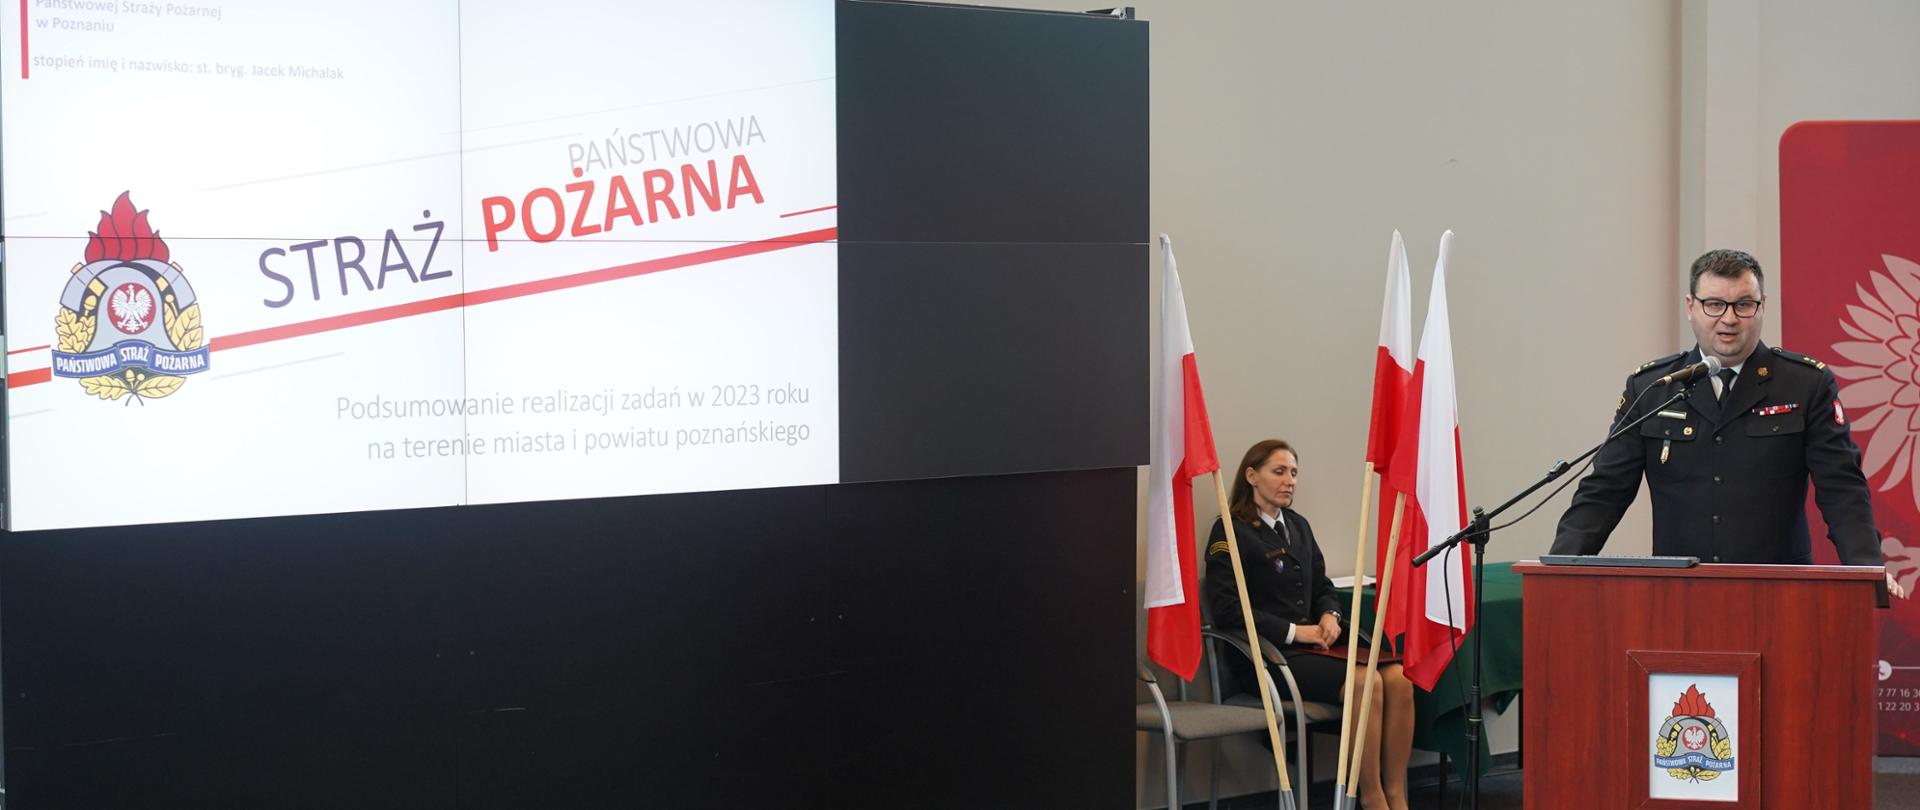 Narada roczna poznańskich strażaków oraz włączenie OSP Gułtowy oraz Węglewo do KSRG